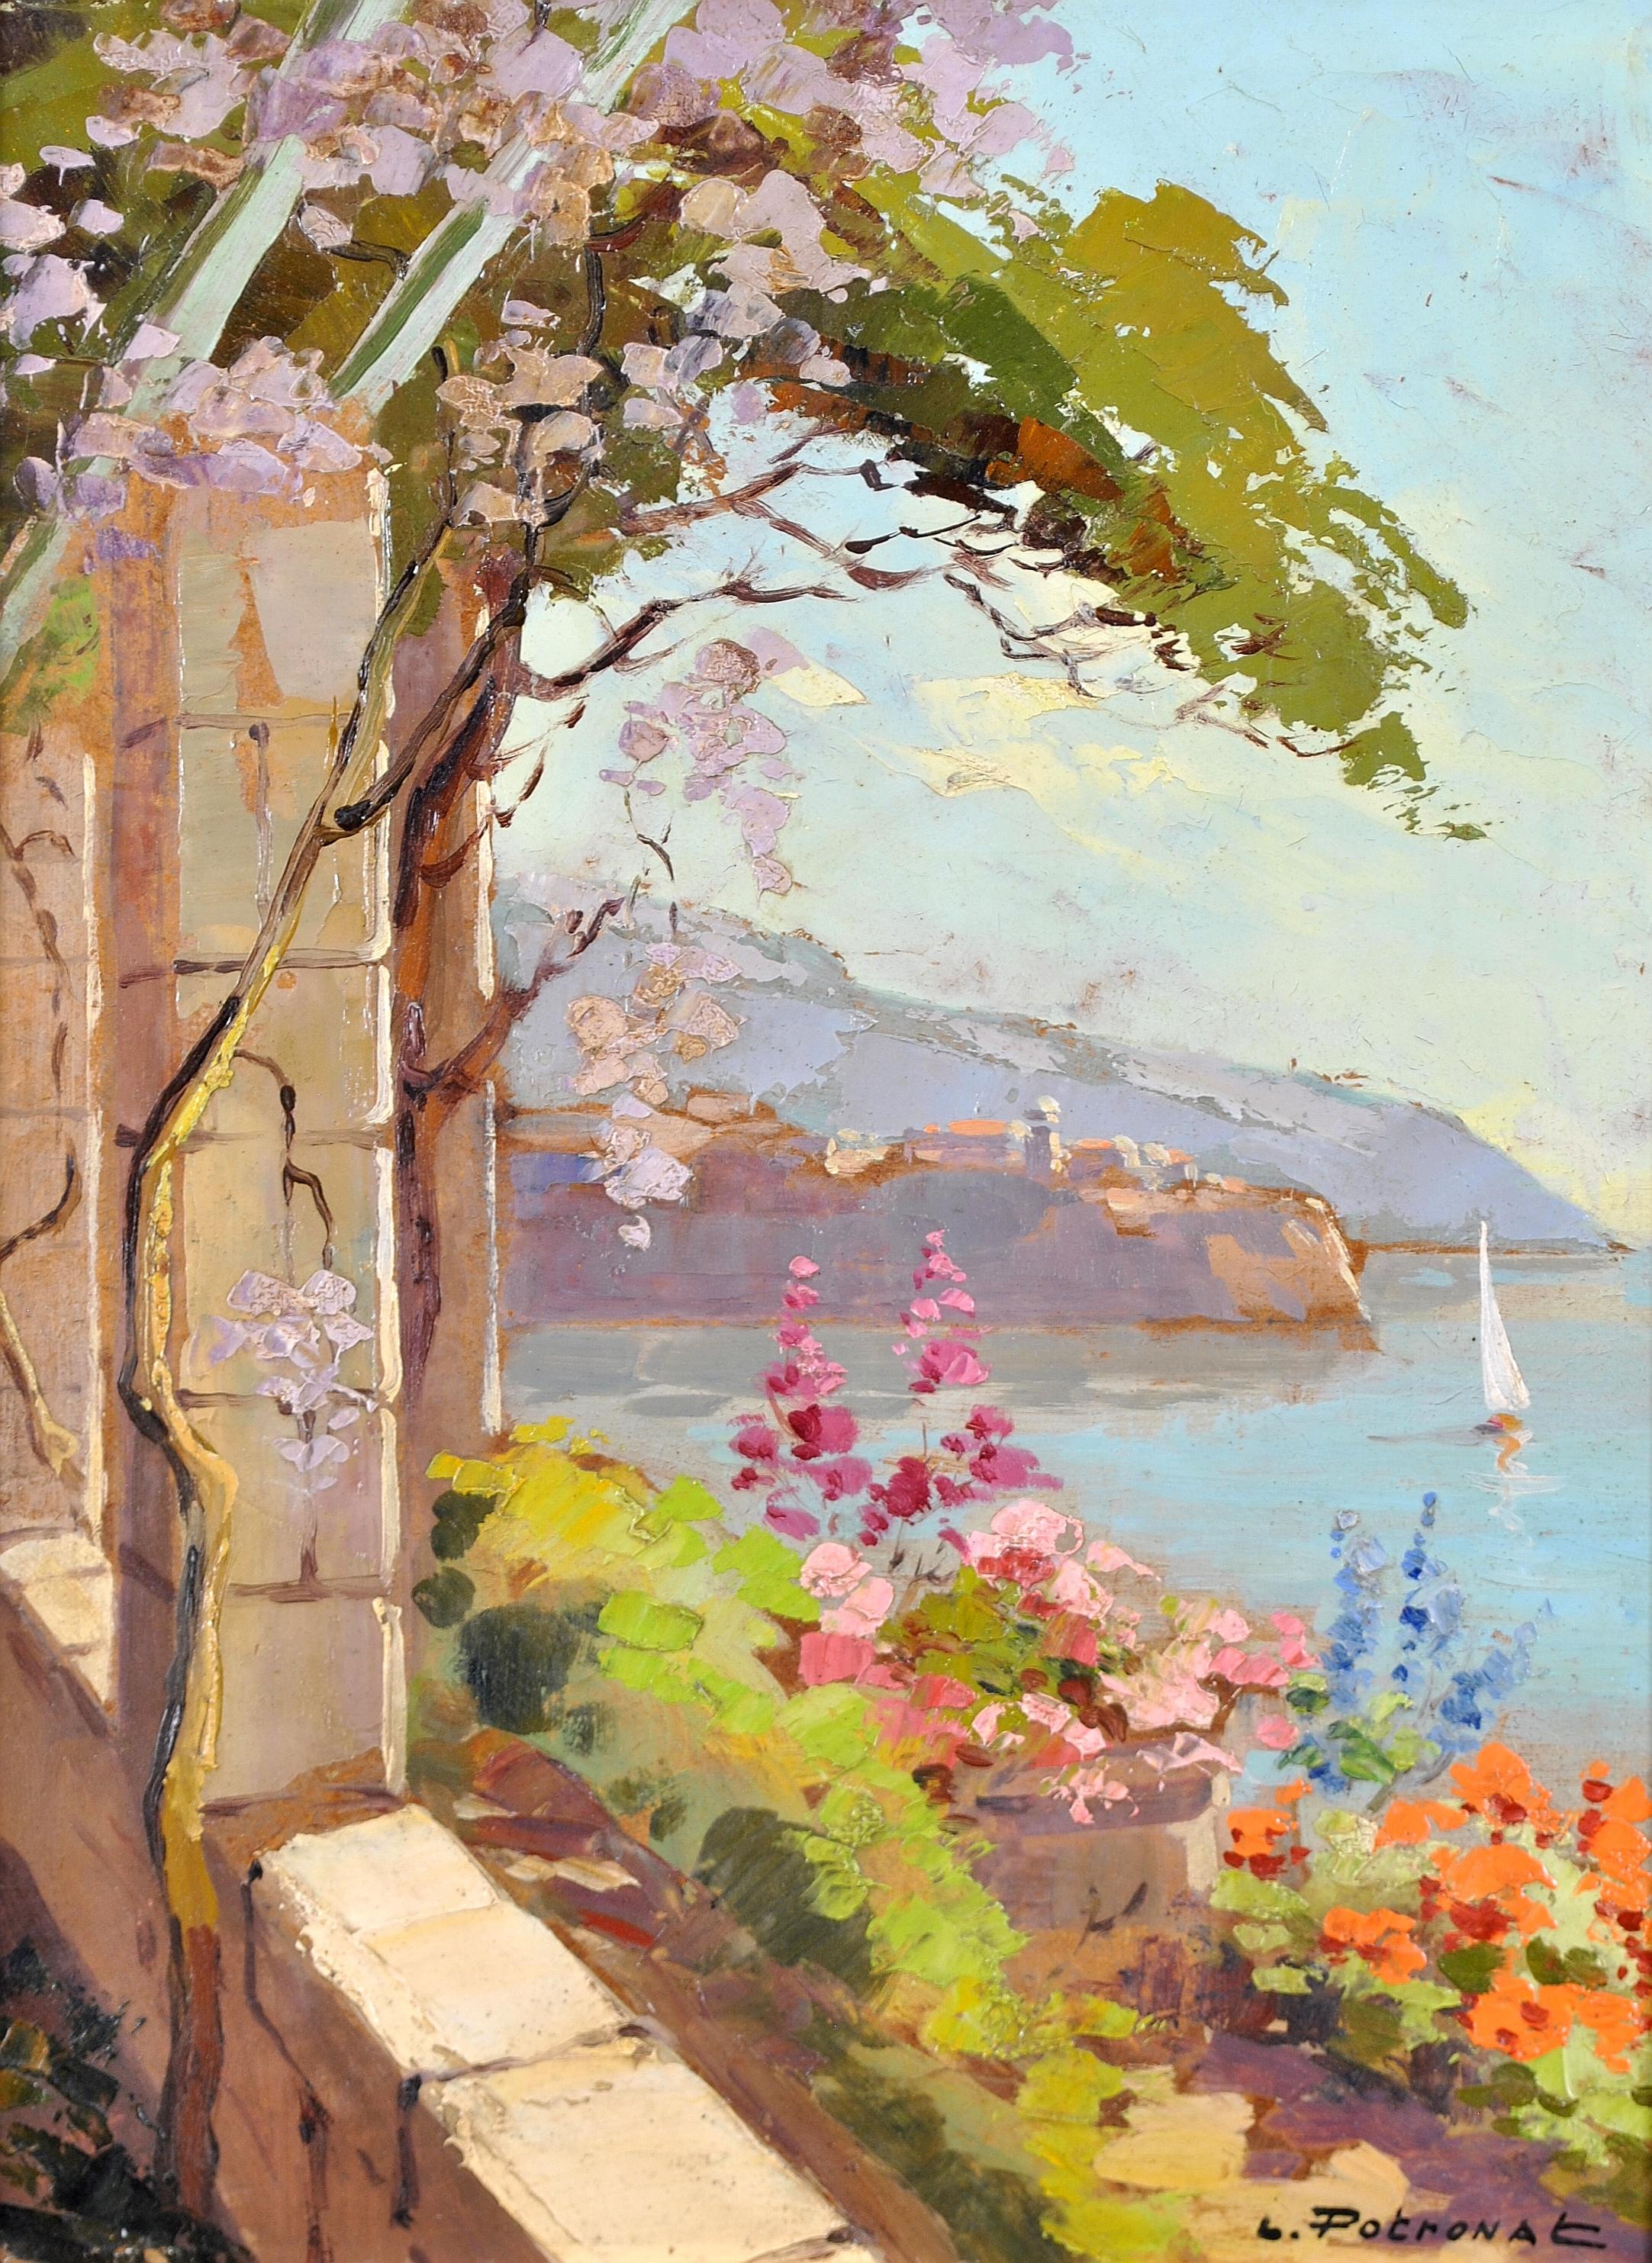 Cote d'Azur – Französische Riviera von Balcony, impressionistisches Ölgemälde – Painting von Lucien Potronat